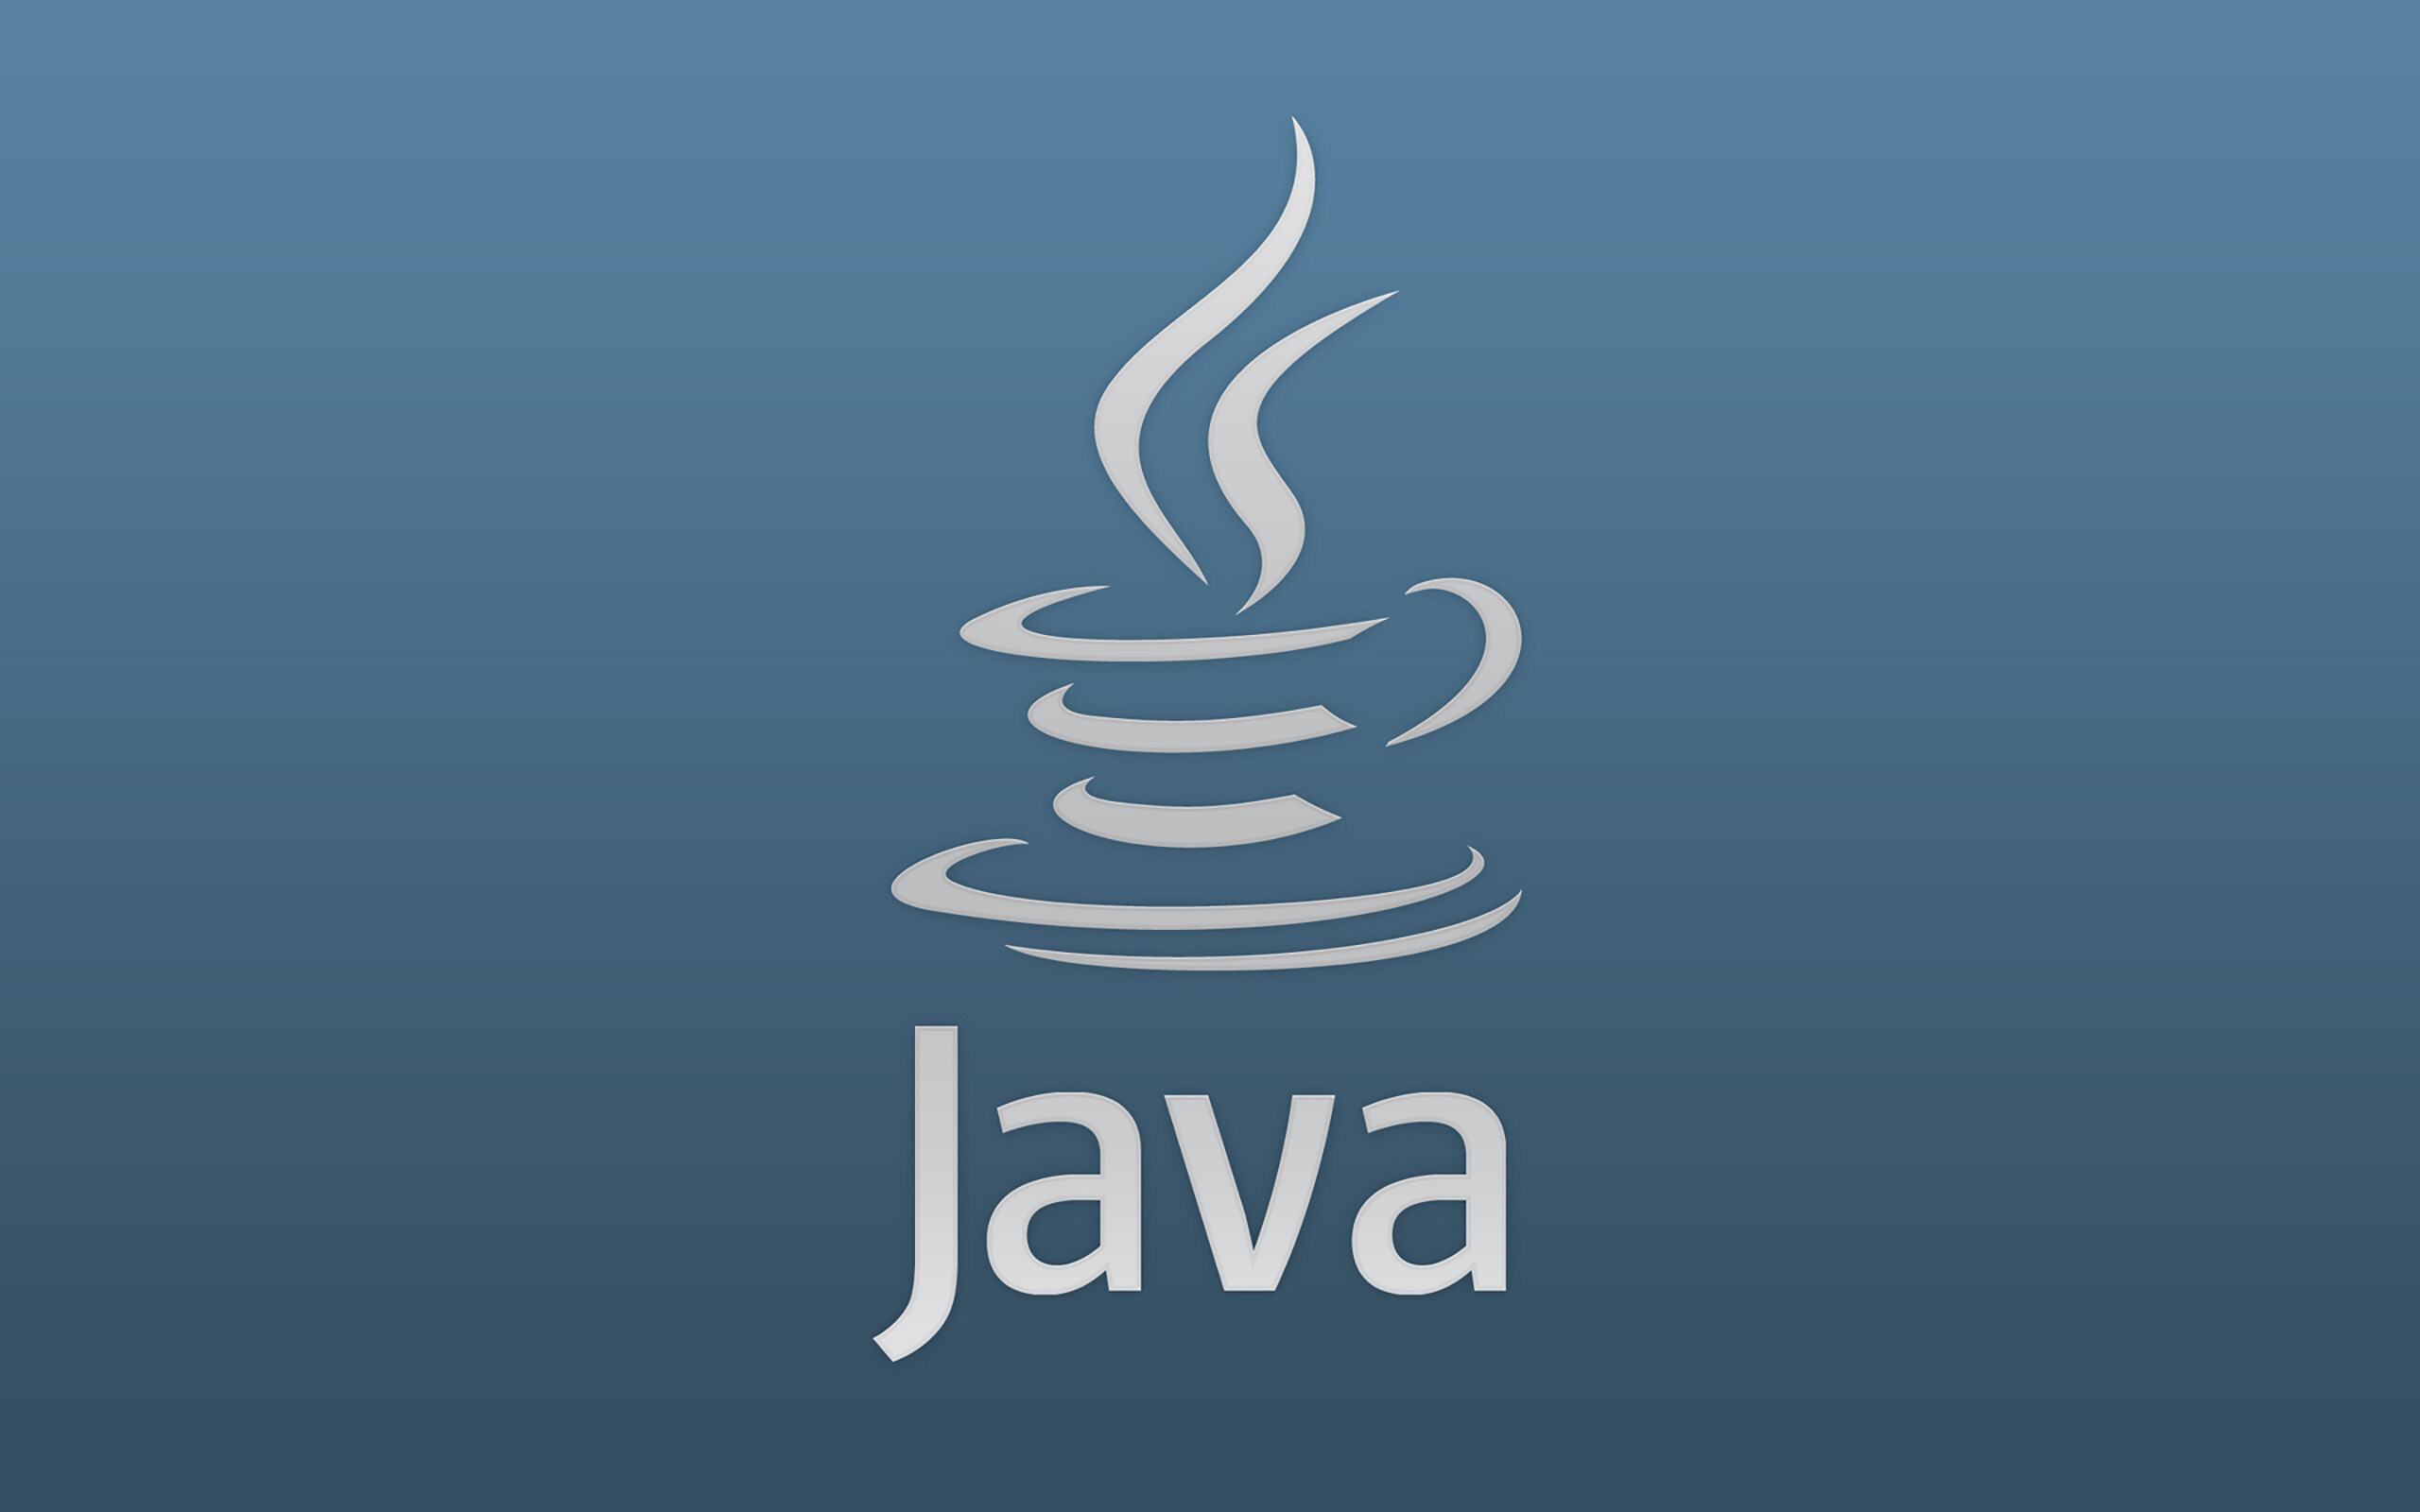 Error Prone 通过检测常见错误帮助改善Java代码